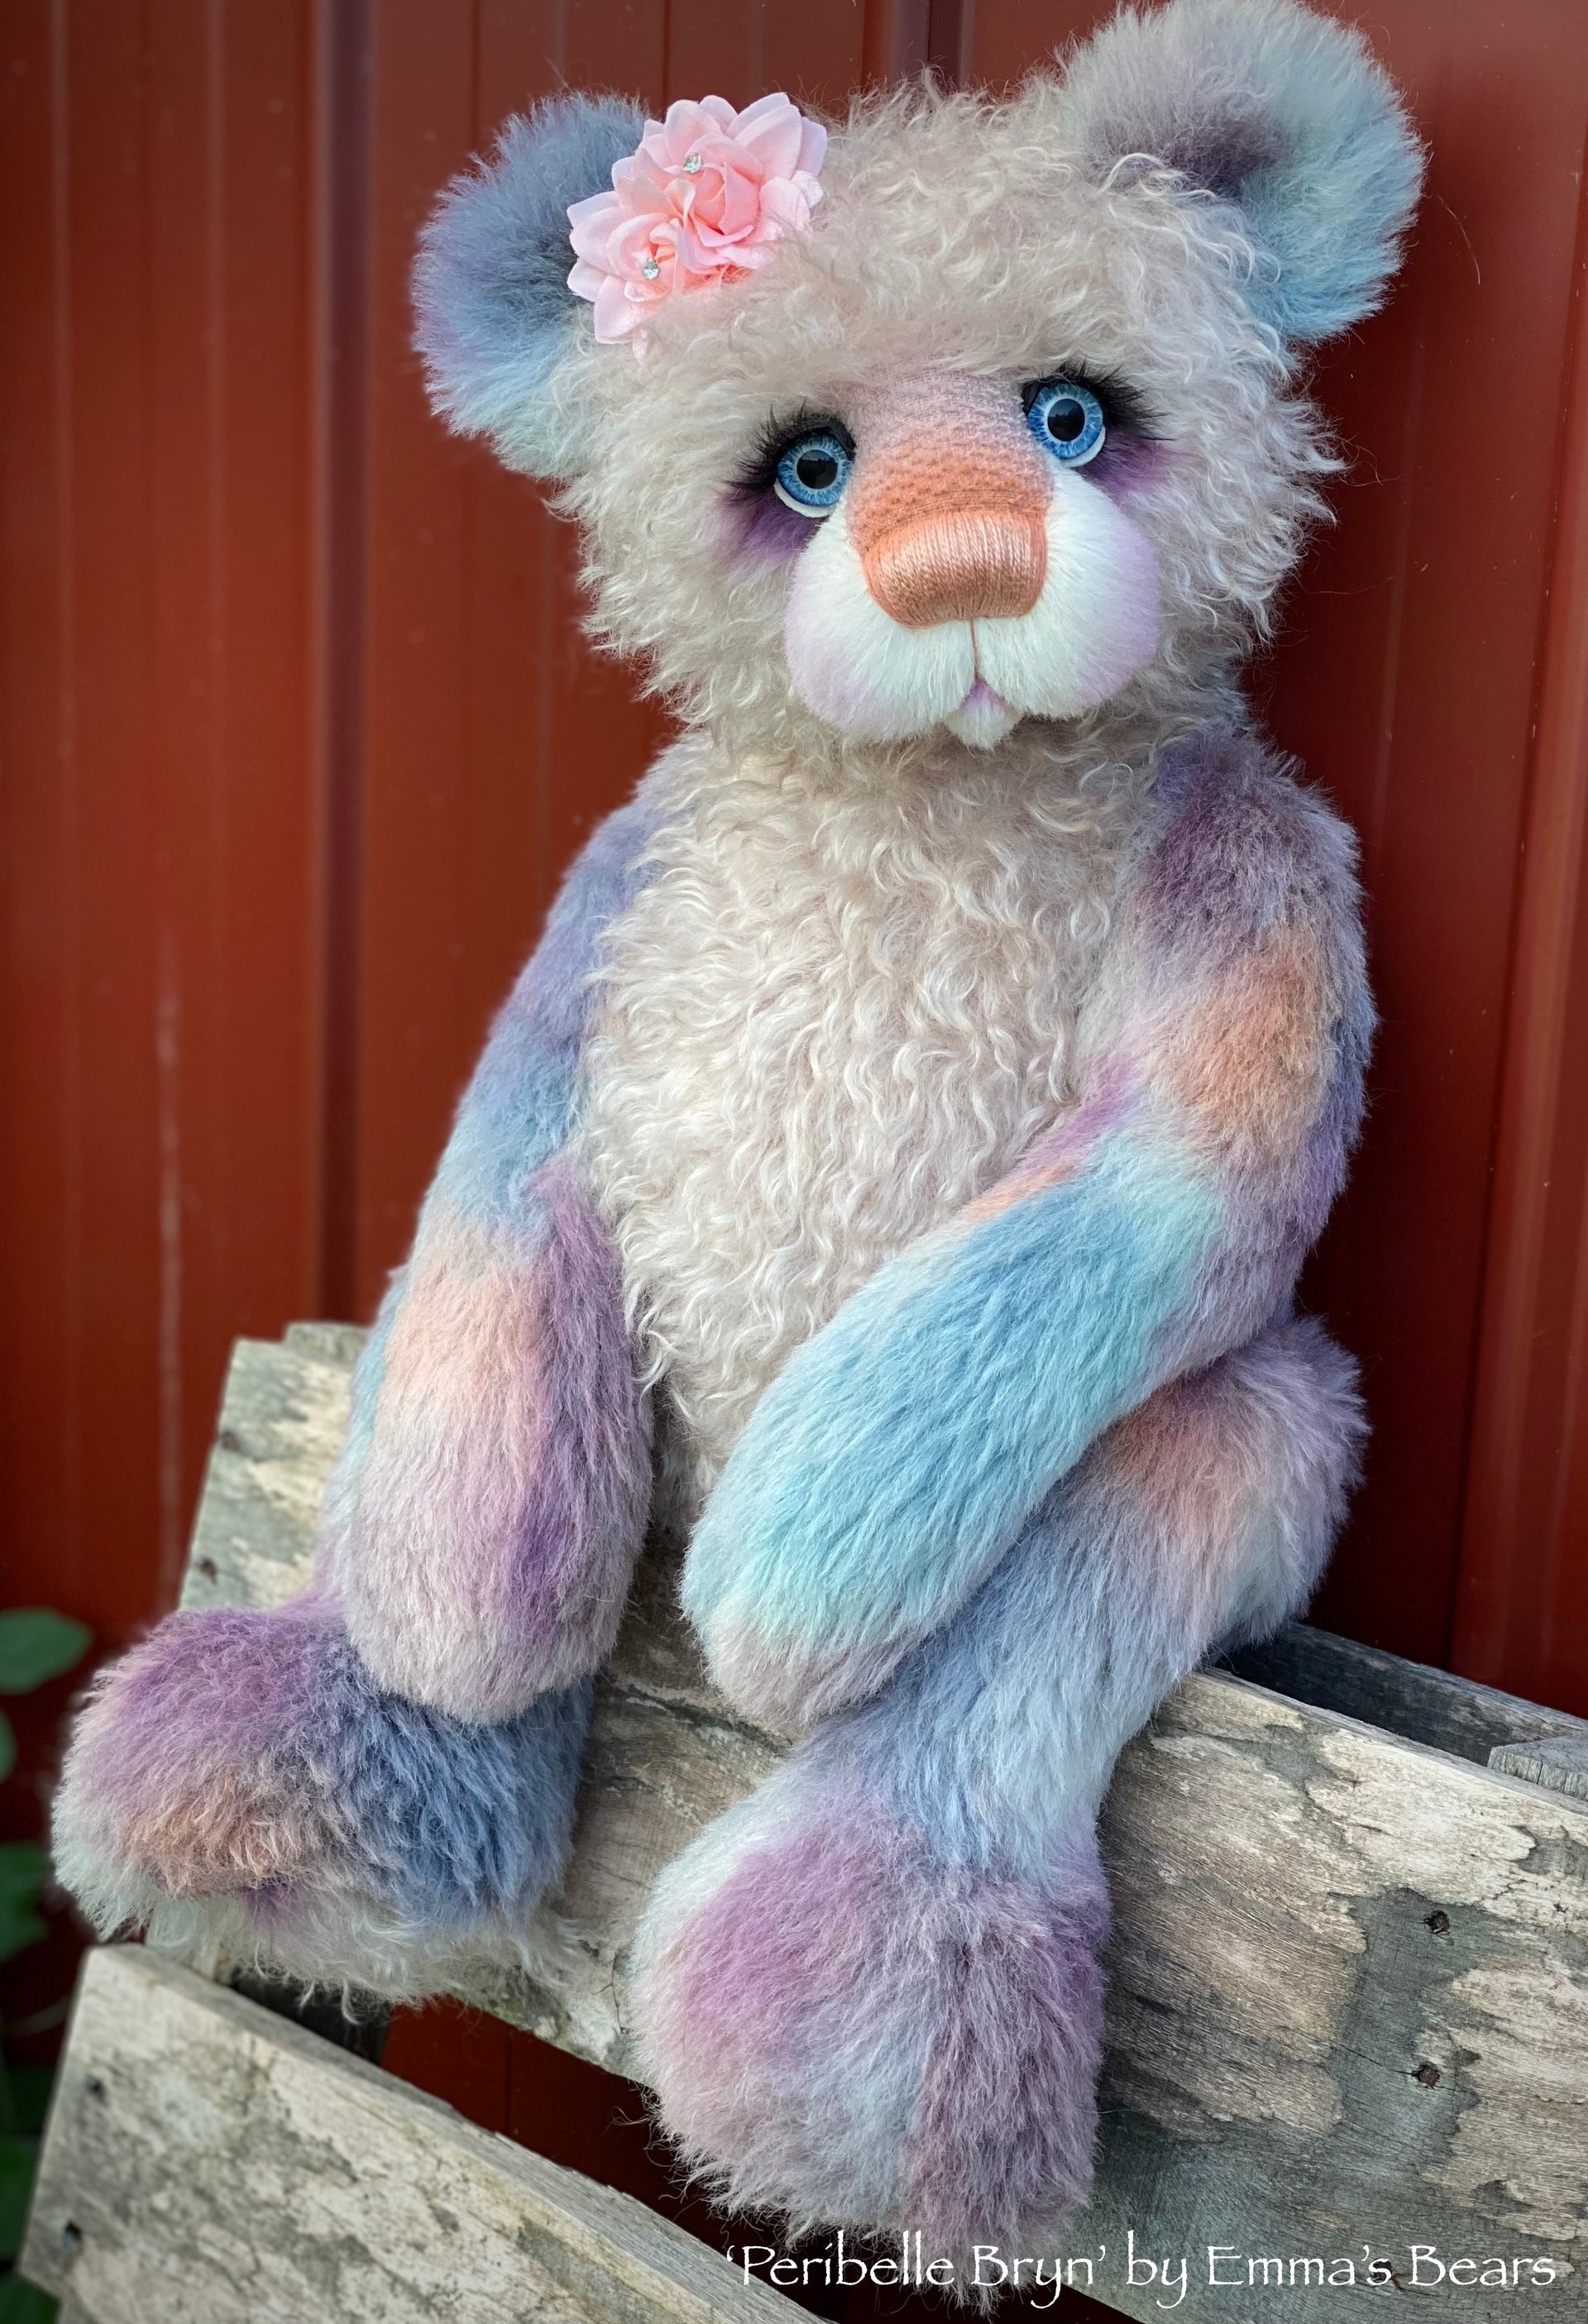 Peribelle Bryn - 21" Hand-Dyed Alpaca Artist Bear by Emma's Bears - OOAK